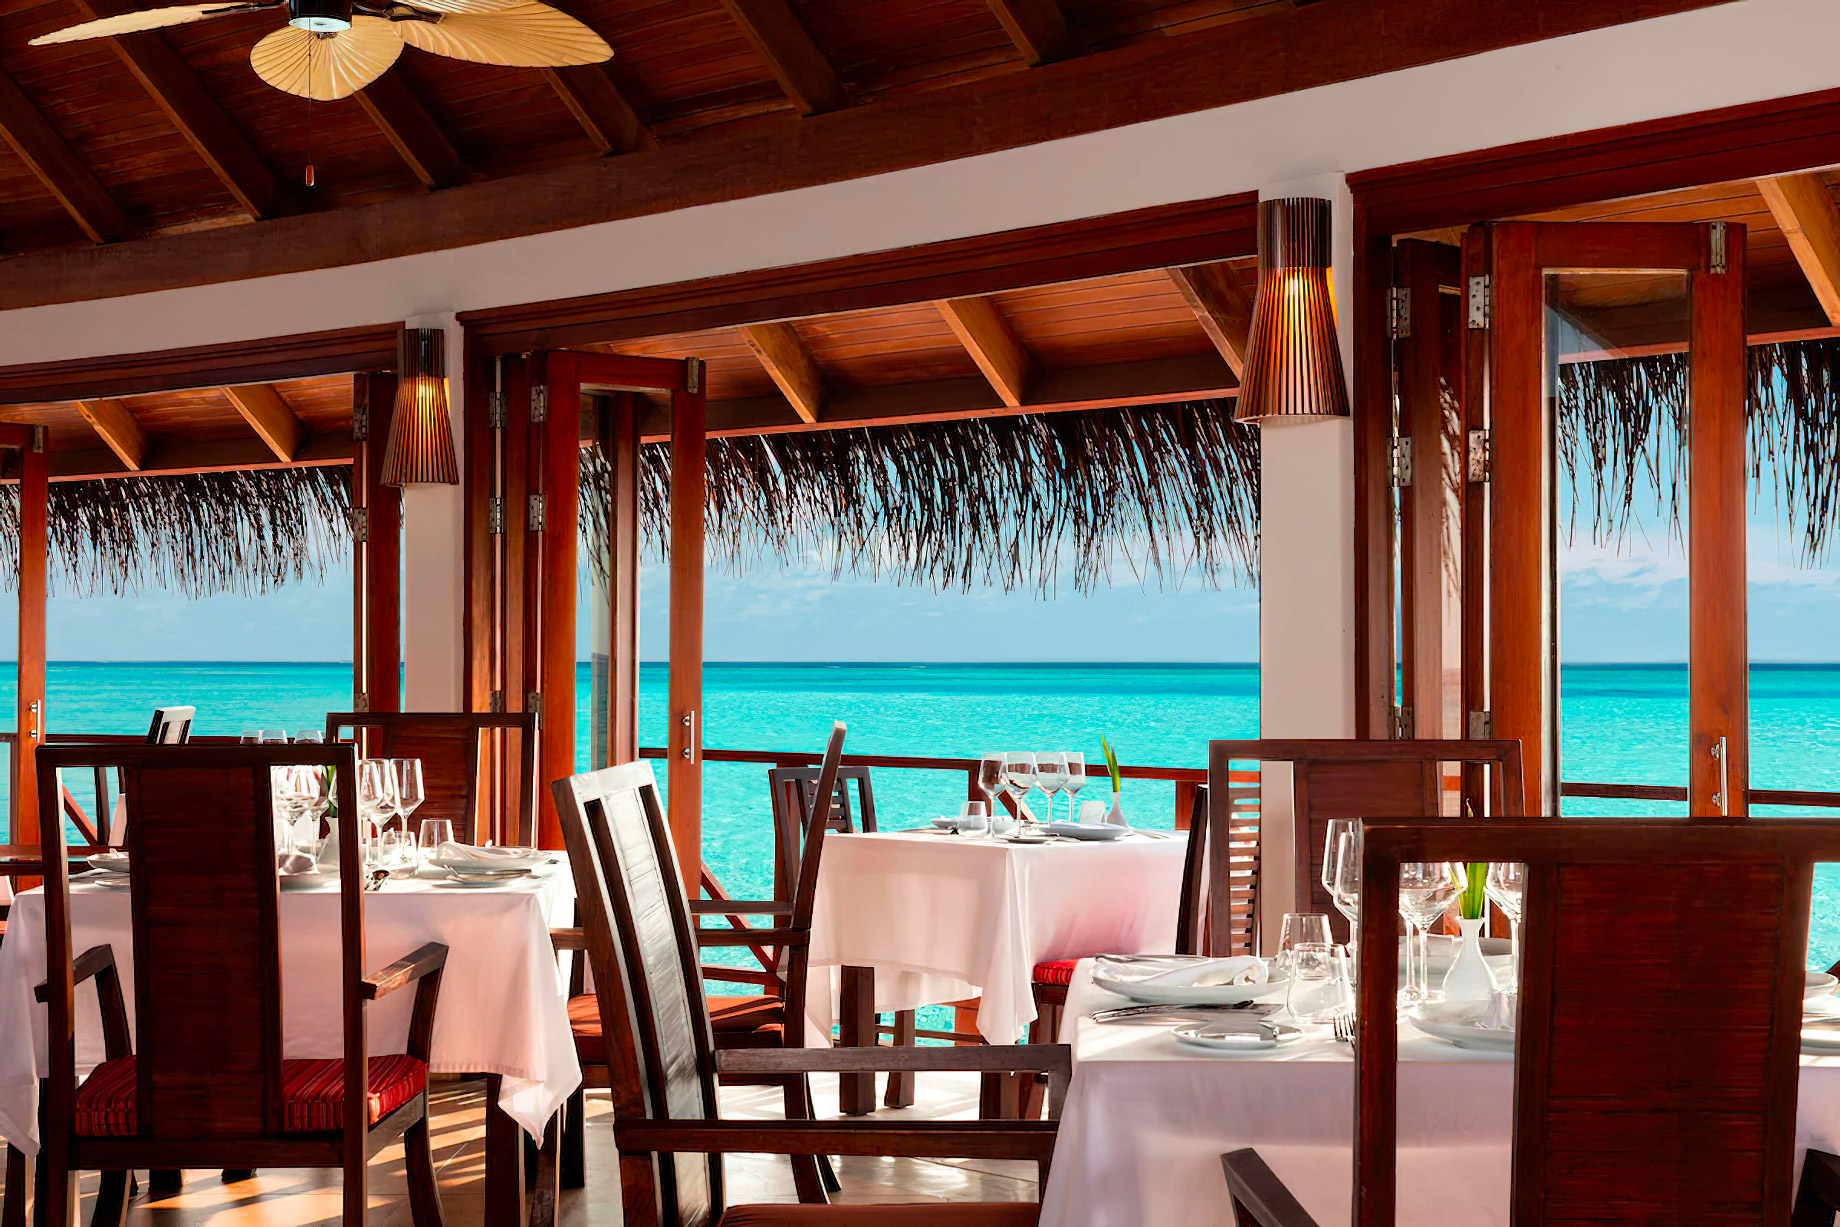 Anantara Thigu Maldives Resort – South Male Atoll, Maldives – Fushi Cafe Ocean View Dining